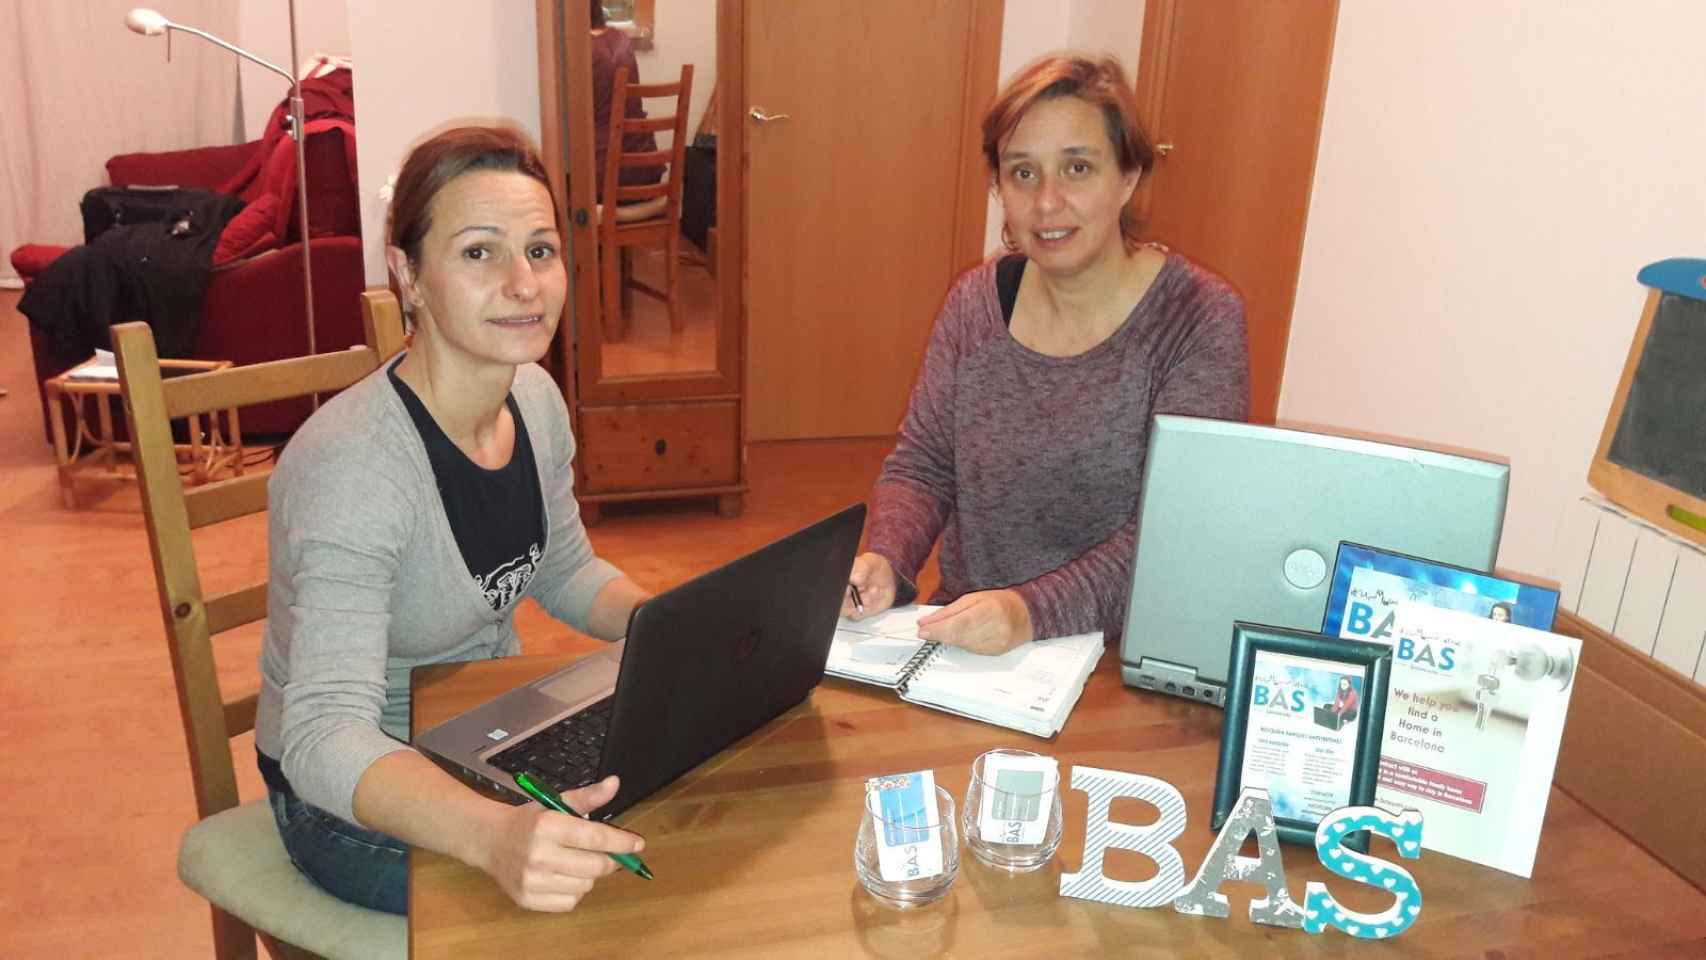 Sònia Serret (izquierda) y Judith Seubas (derecha) en la sede virtual de su plataforma de alojamientos para estudiantes y profesores